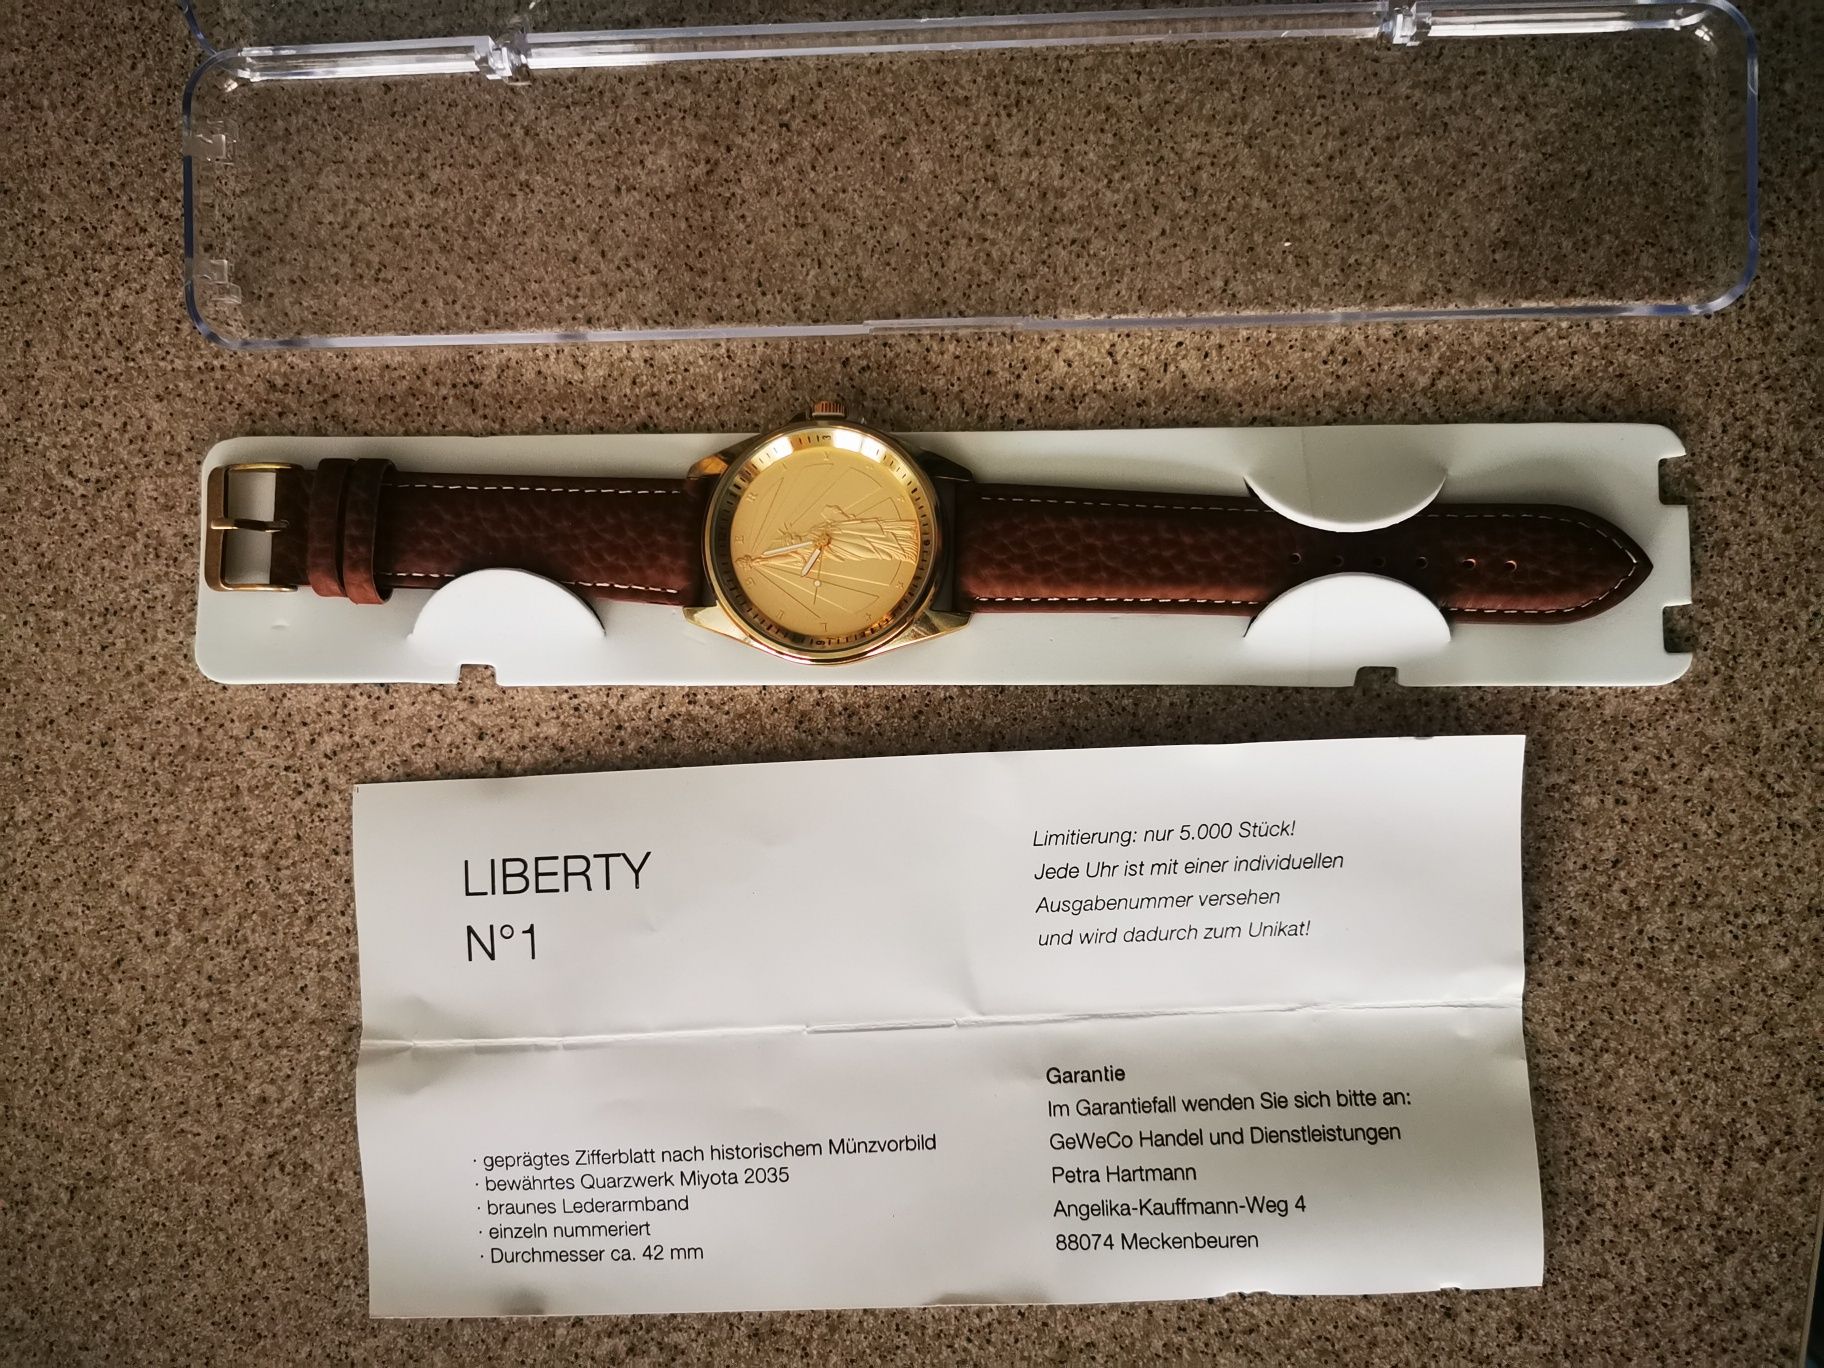 Zegarek z limitowanej edycji Liberty no1.